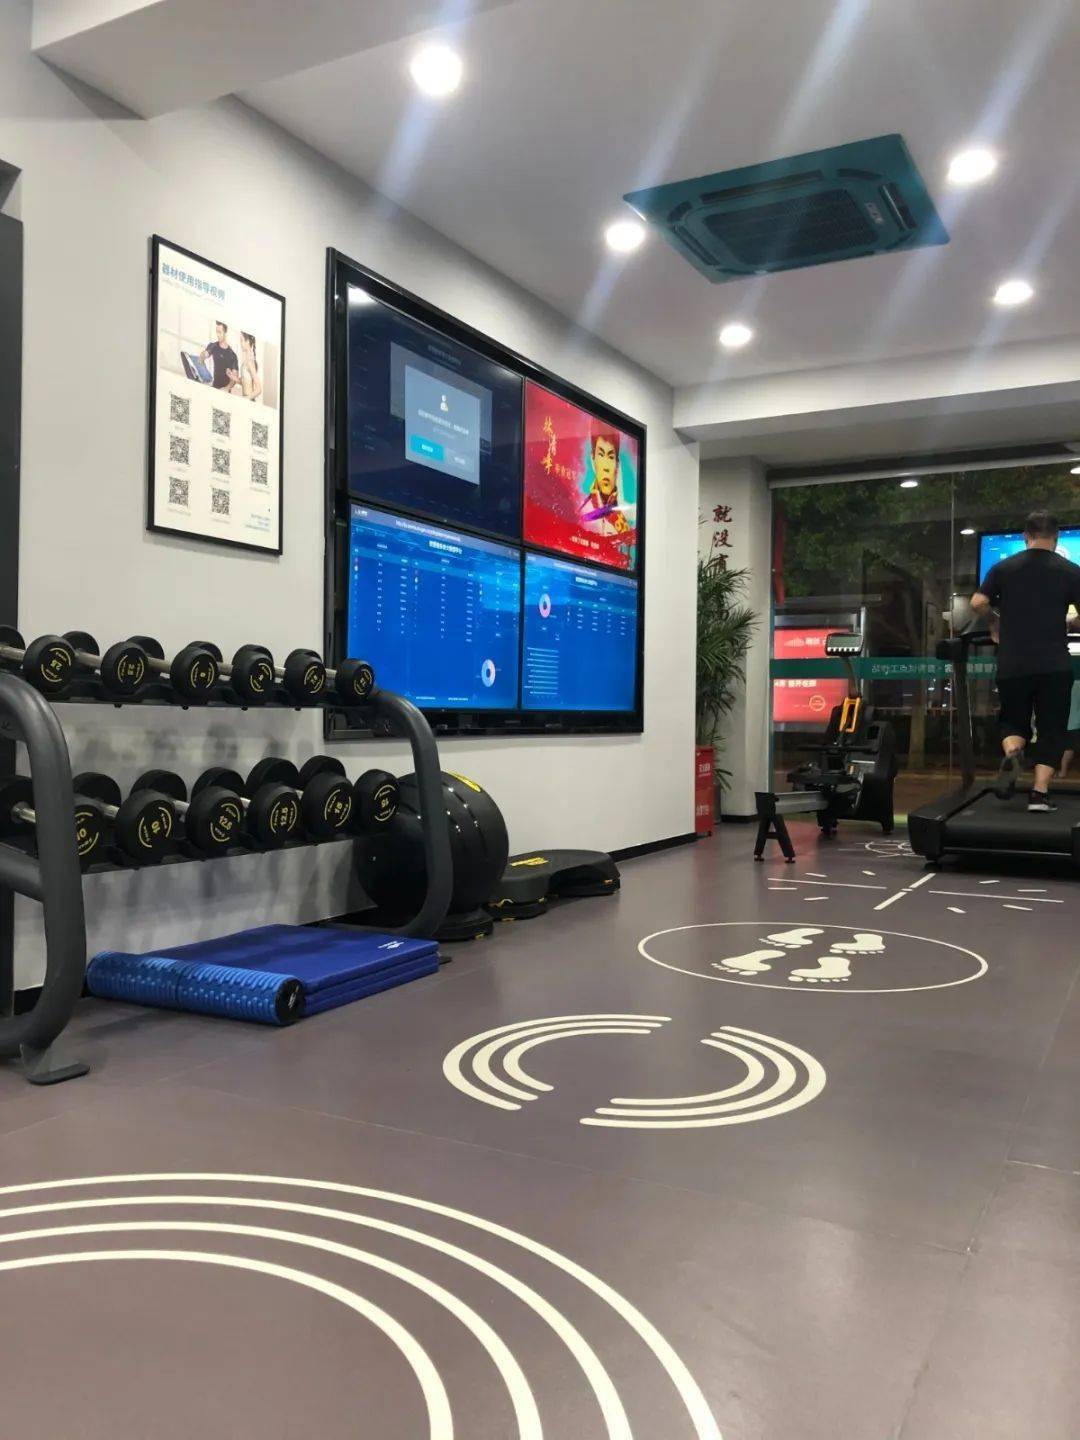 智慧健健身房 虽只有65平方米 室内被划分成三个区域 智能储物区 健身